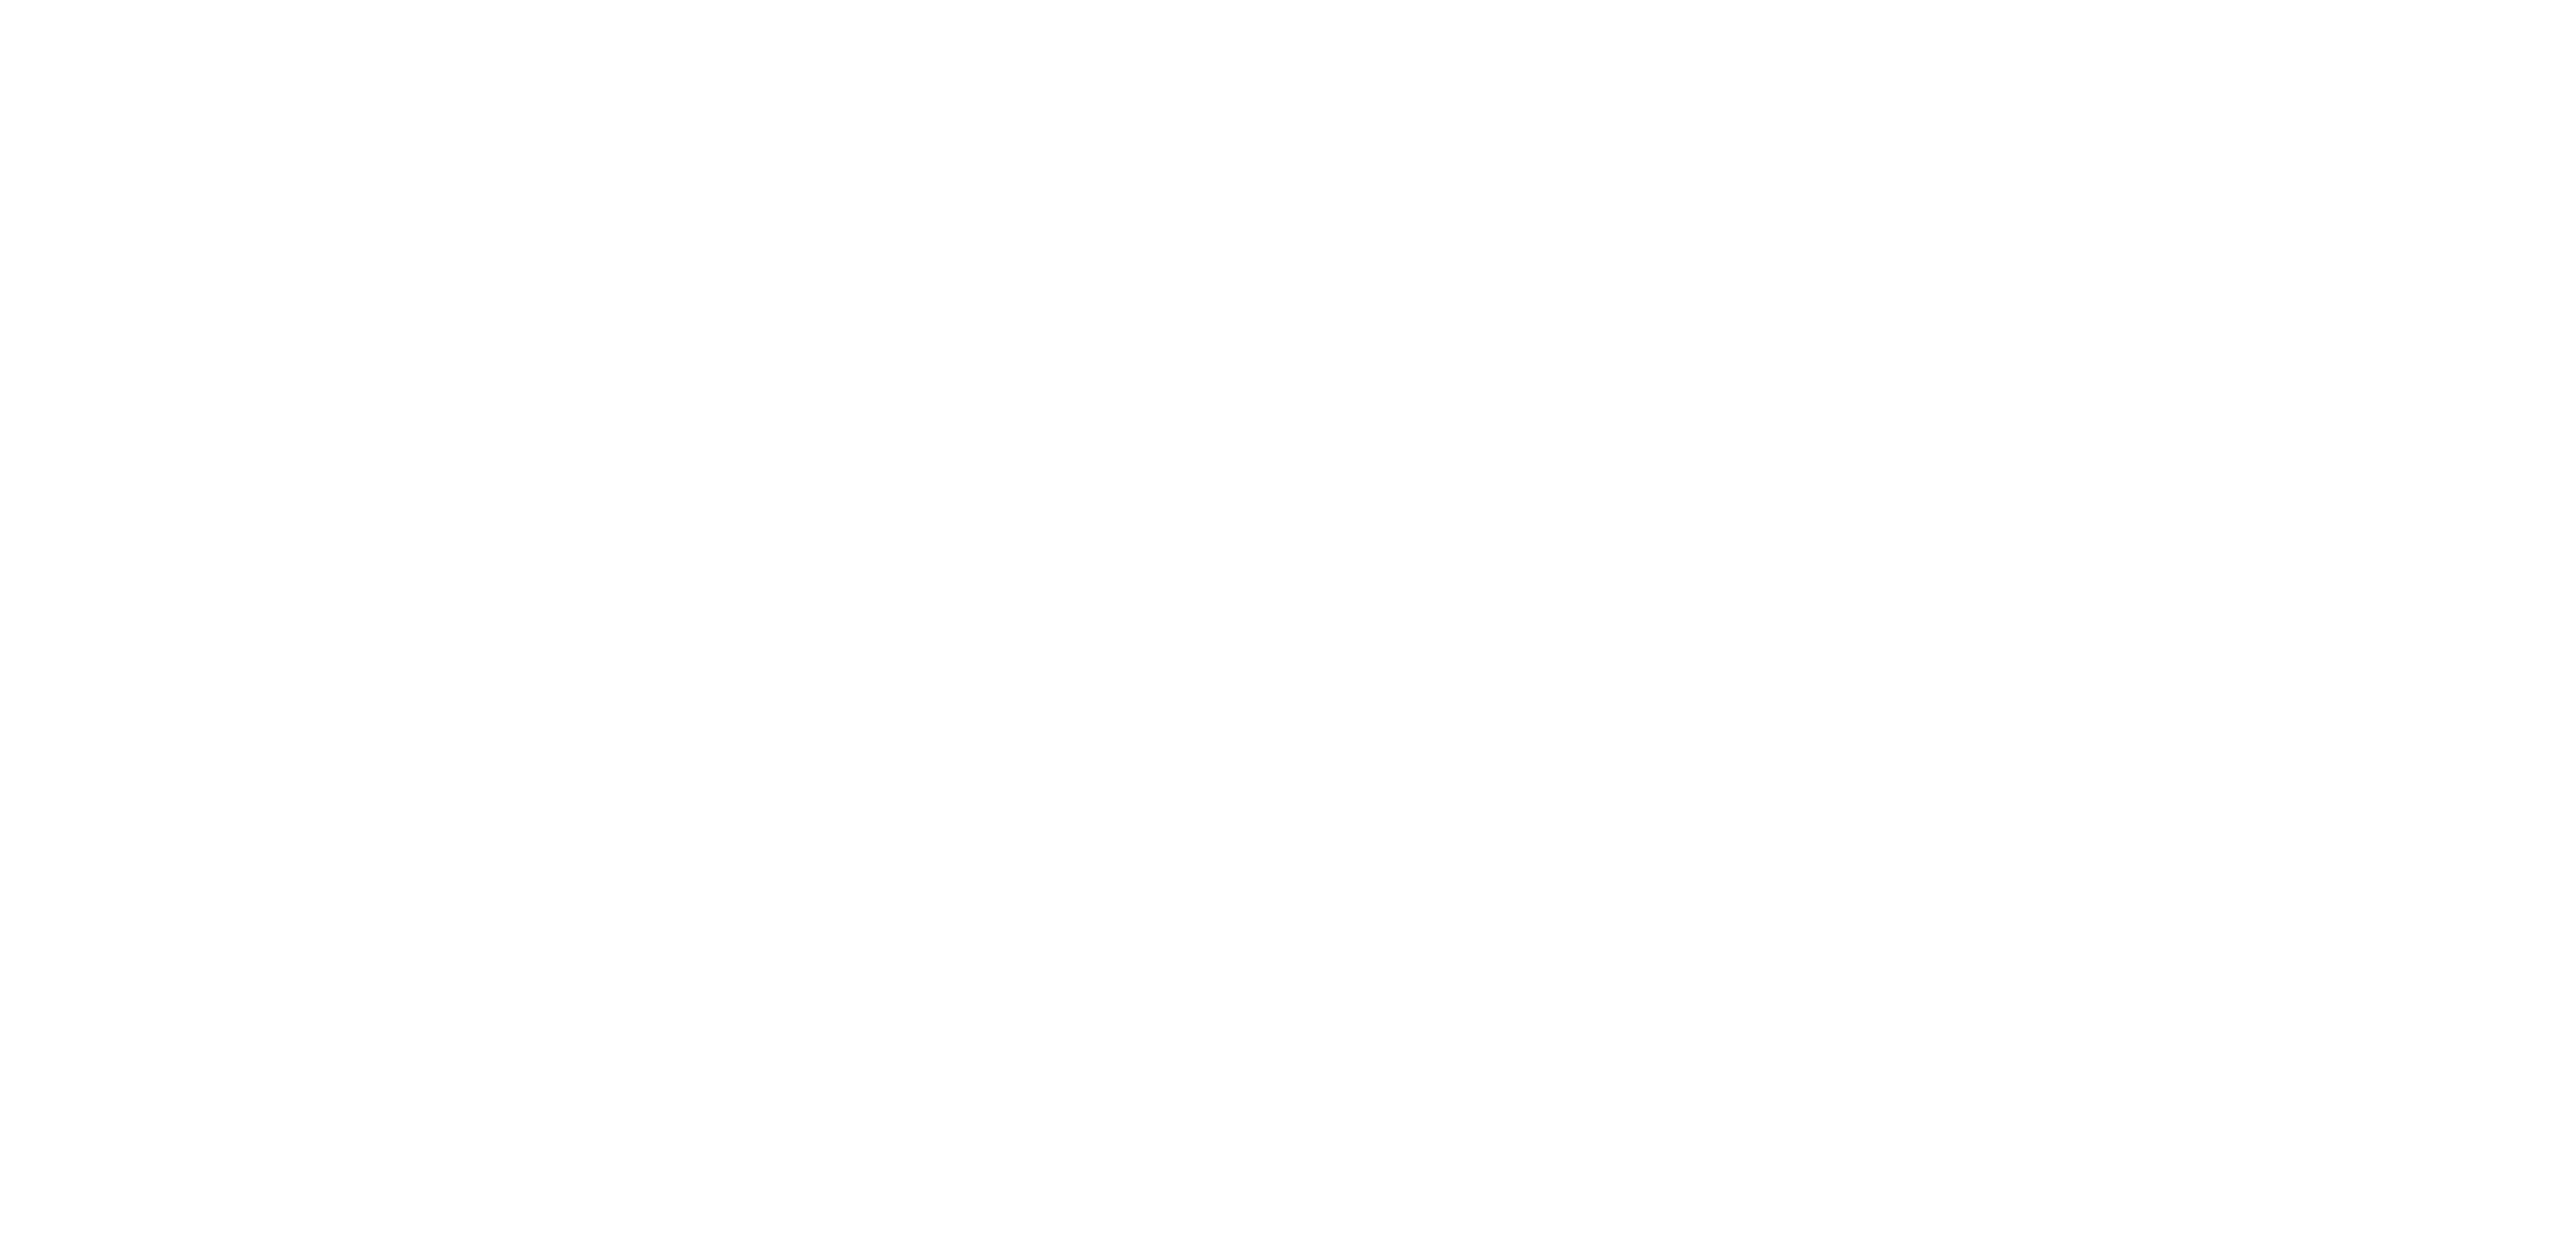 TheBlackStudio